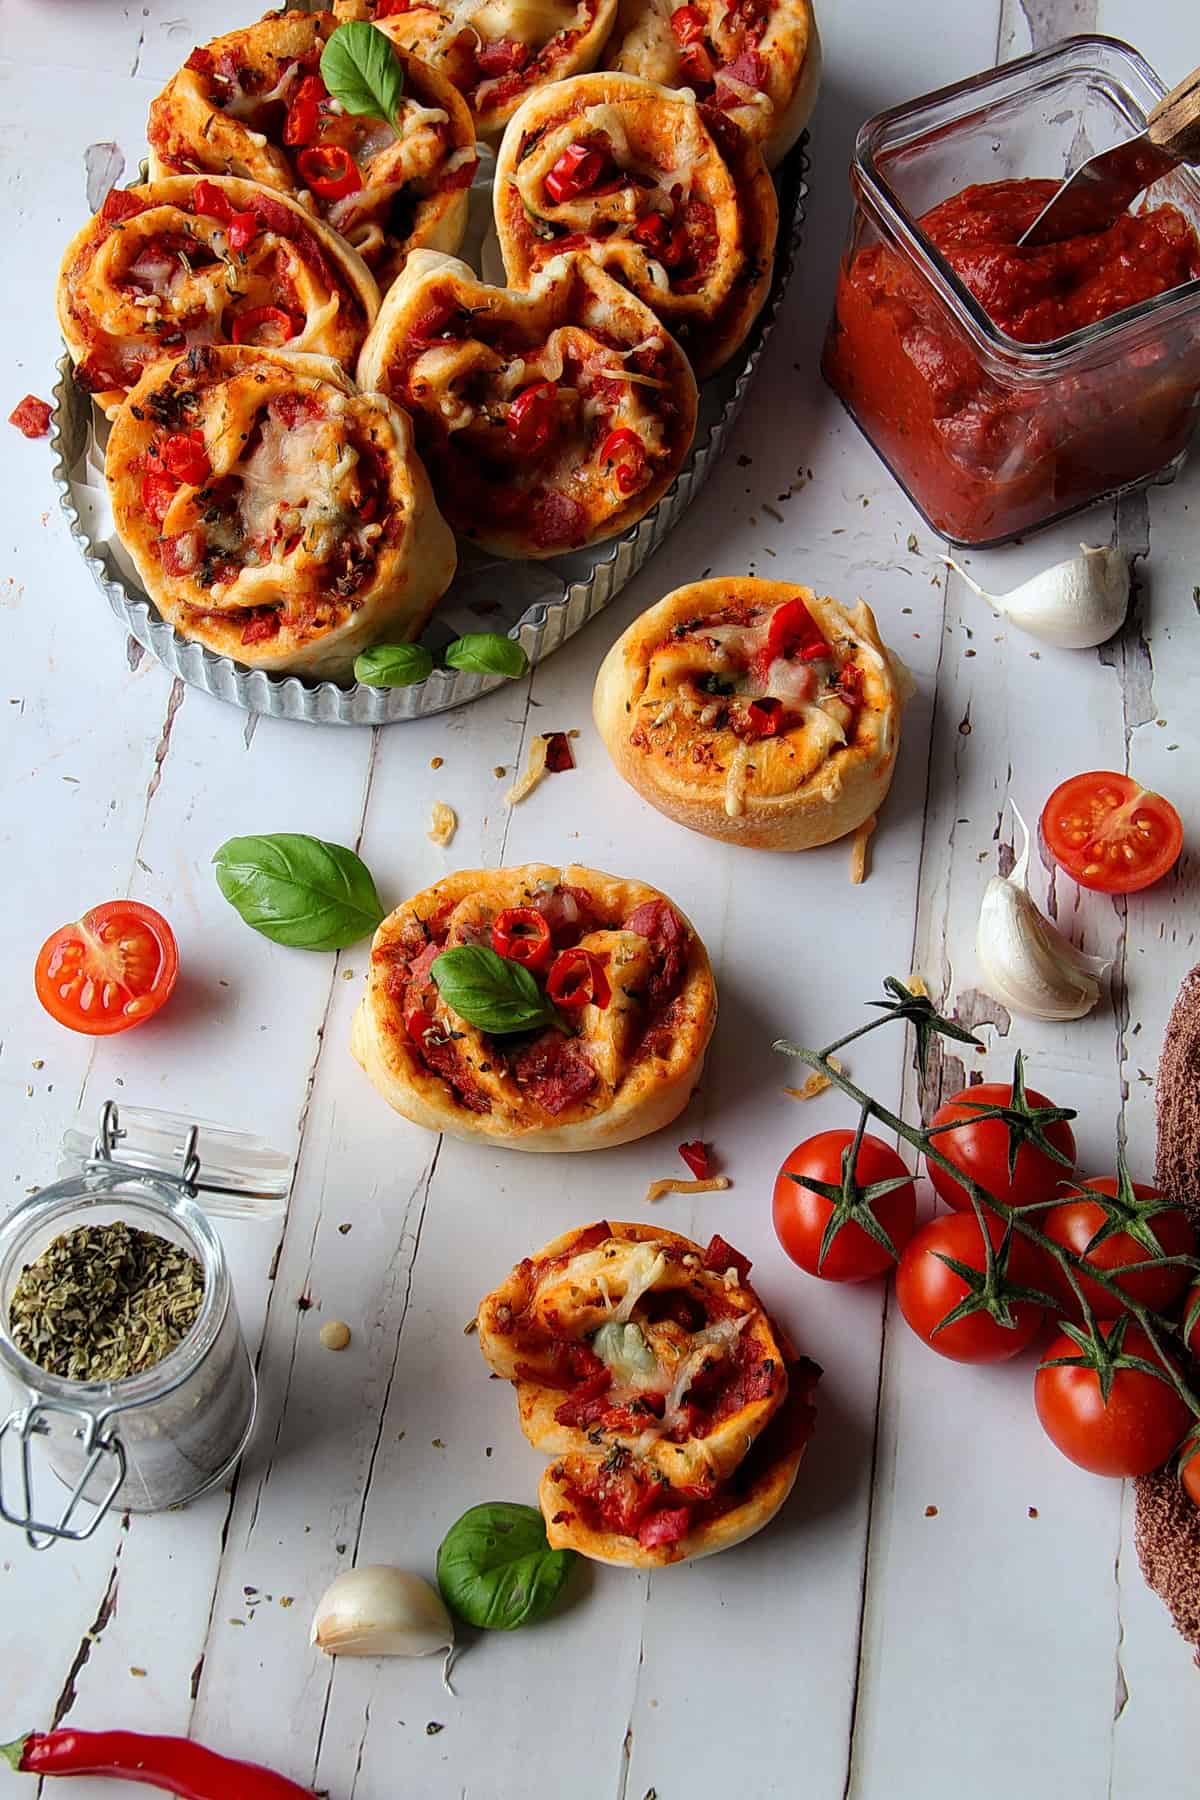 Pizzaschnecken in einer Schale und auf dem Tisch verteilt, neben Tomaten, Knoblauch und Basilikum